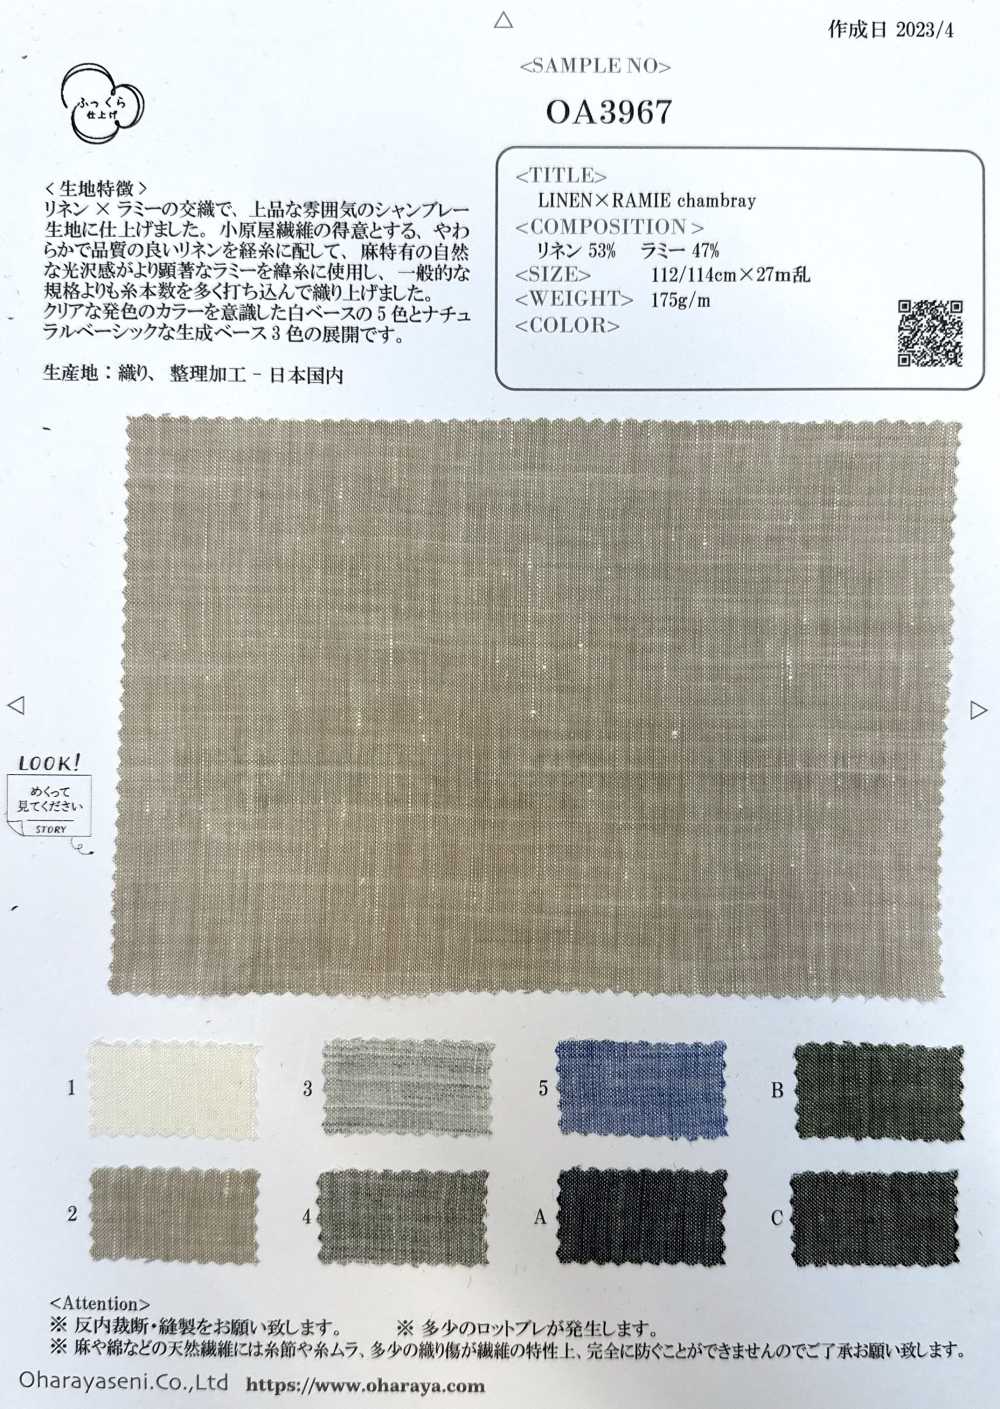 OA3967 LIN × RAMIE Chambray[Fabrication De Textile] Oharayaseni